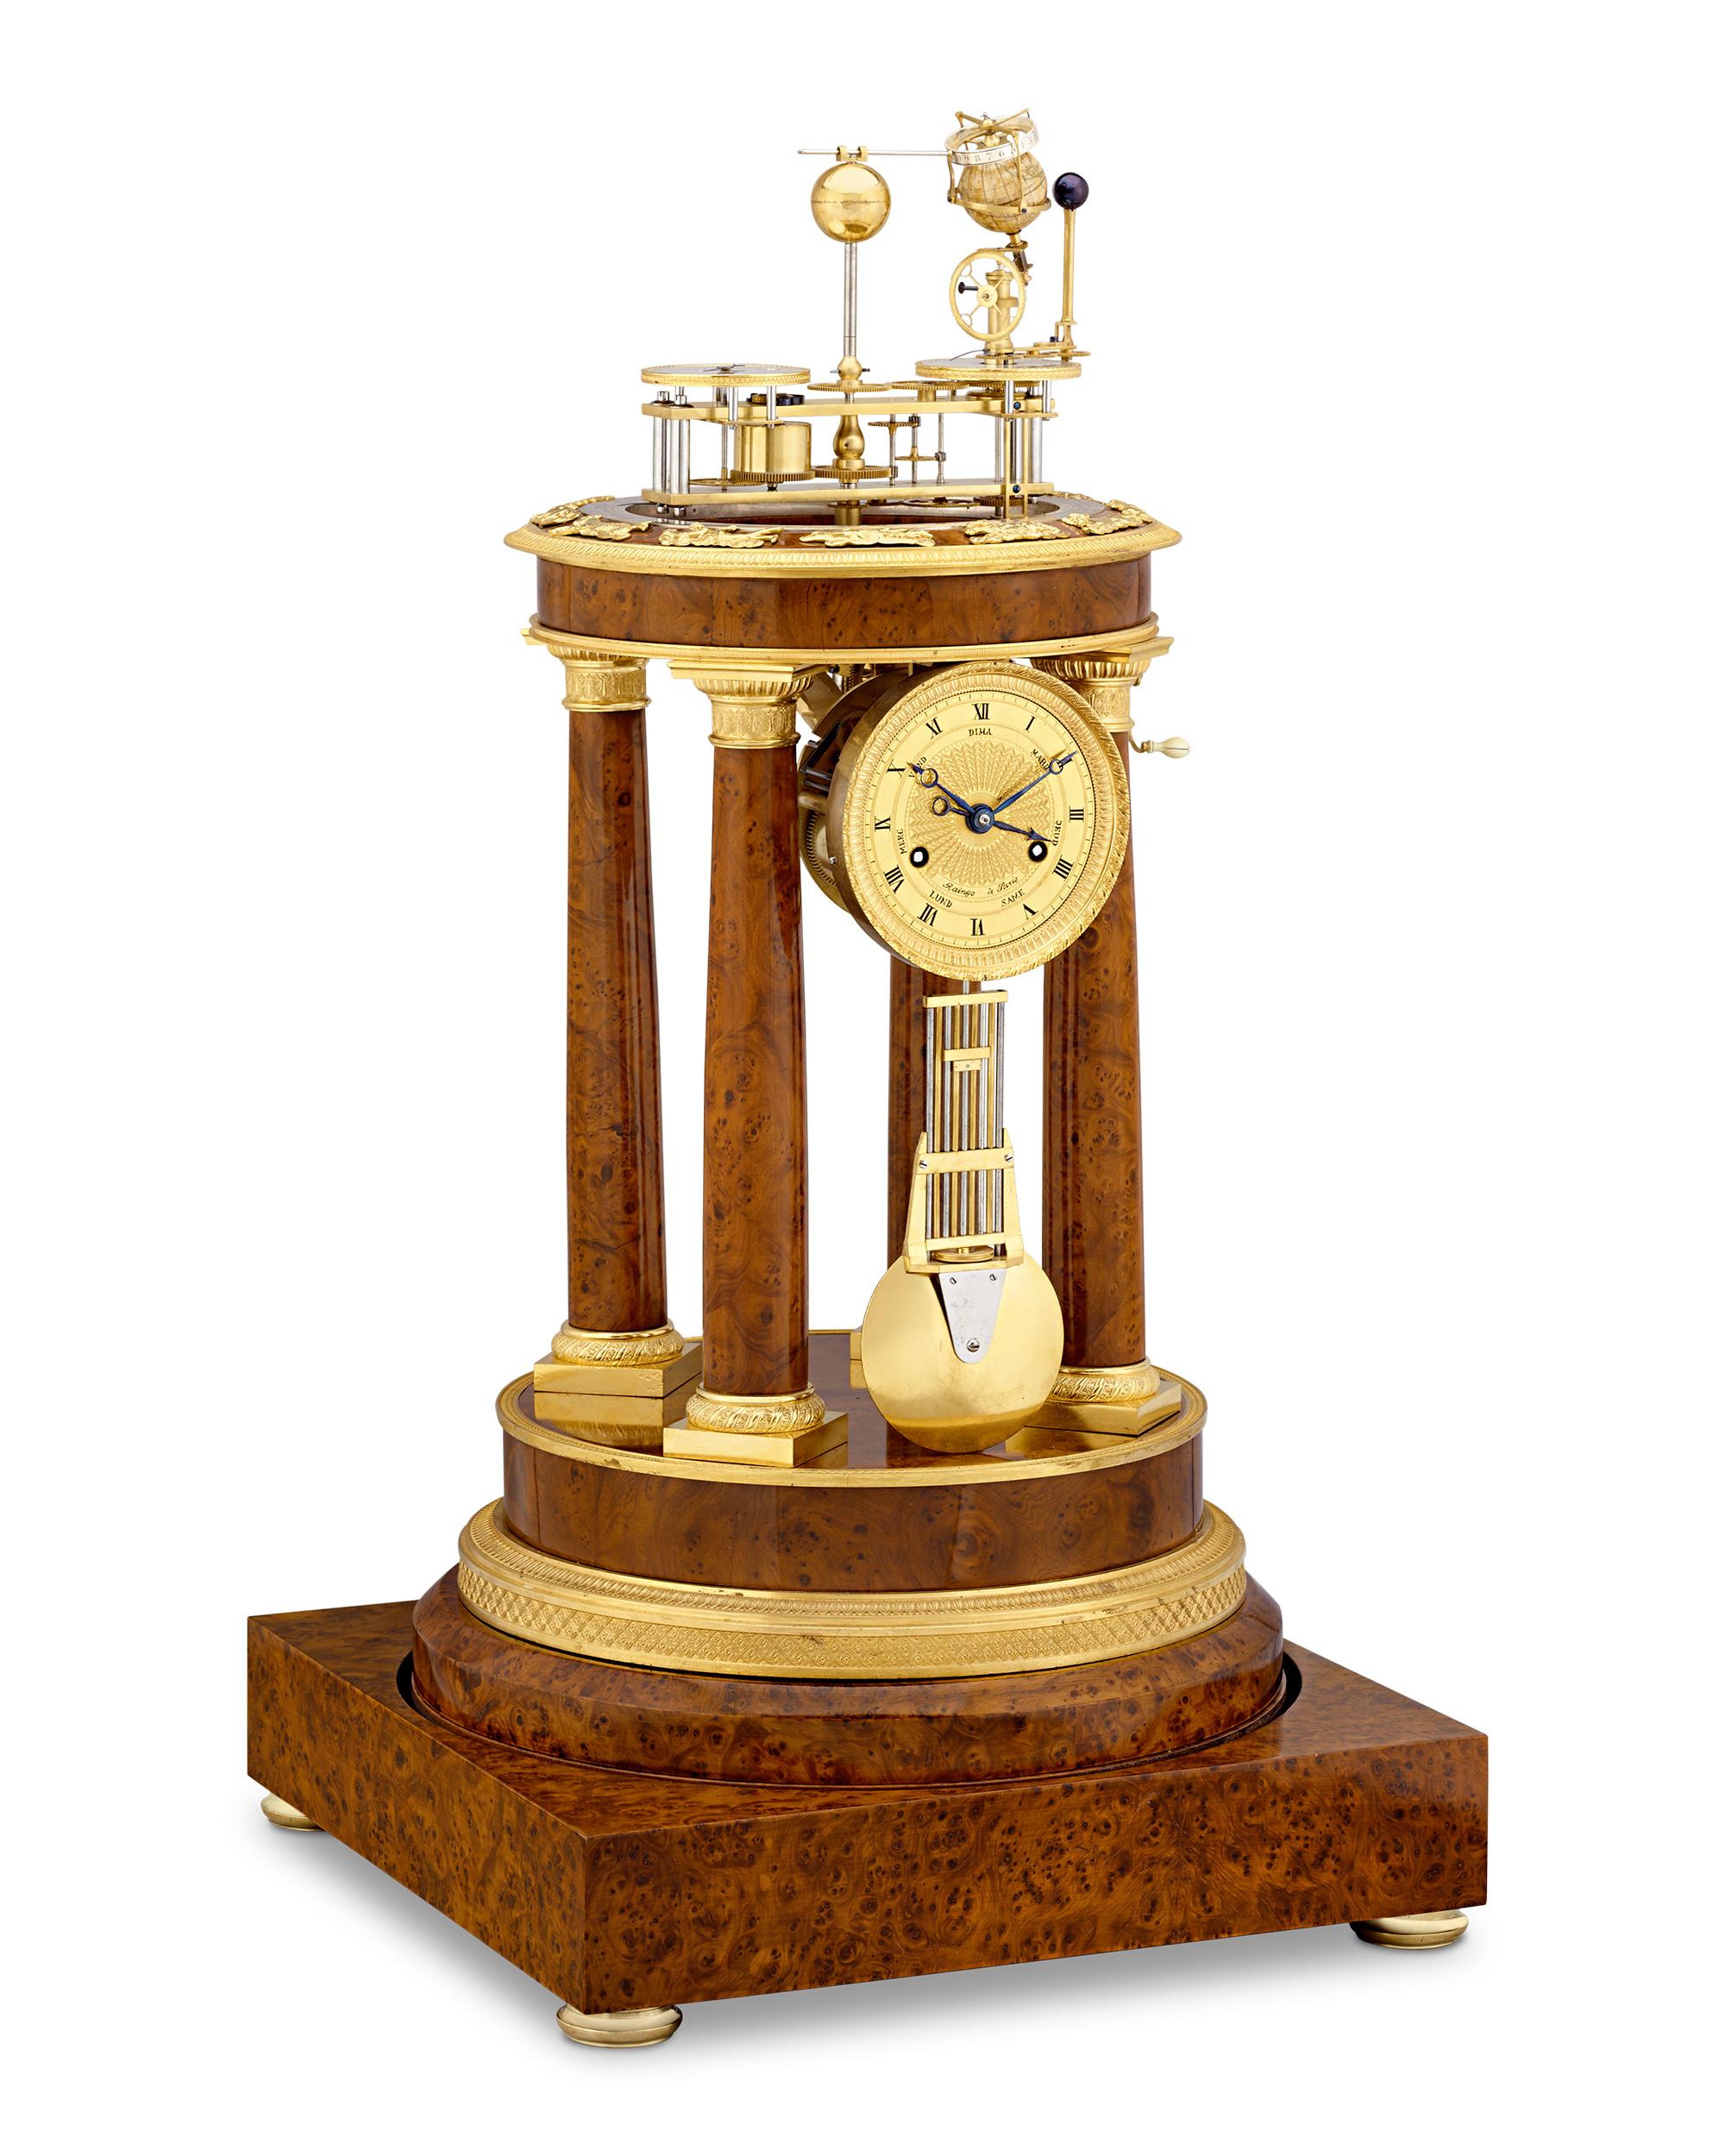 Cette horloge planétaire, d'une incroyable rareté et d'une grande importance horlogère et astronomique, a été fabriquée par le célèbre horloger parisien Zacharie-Nicholas-Amé-Joseph Raingo. Raingo est considéré comme le plus important créateur